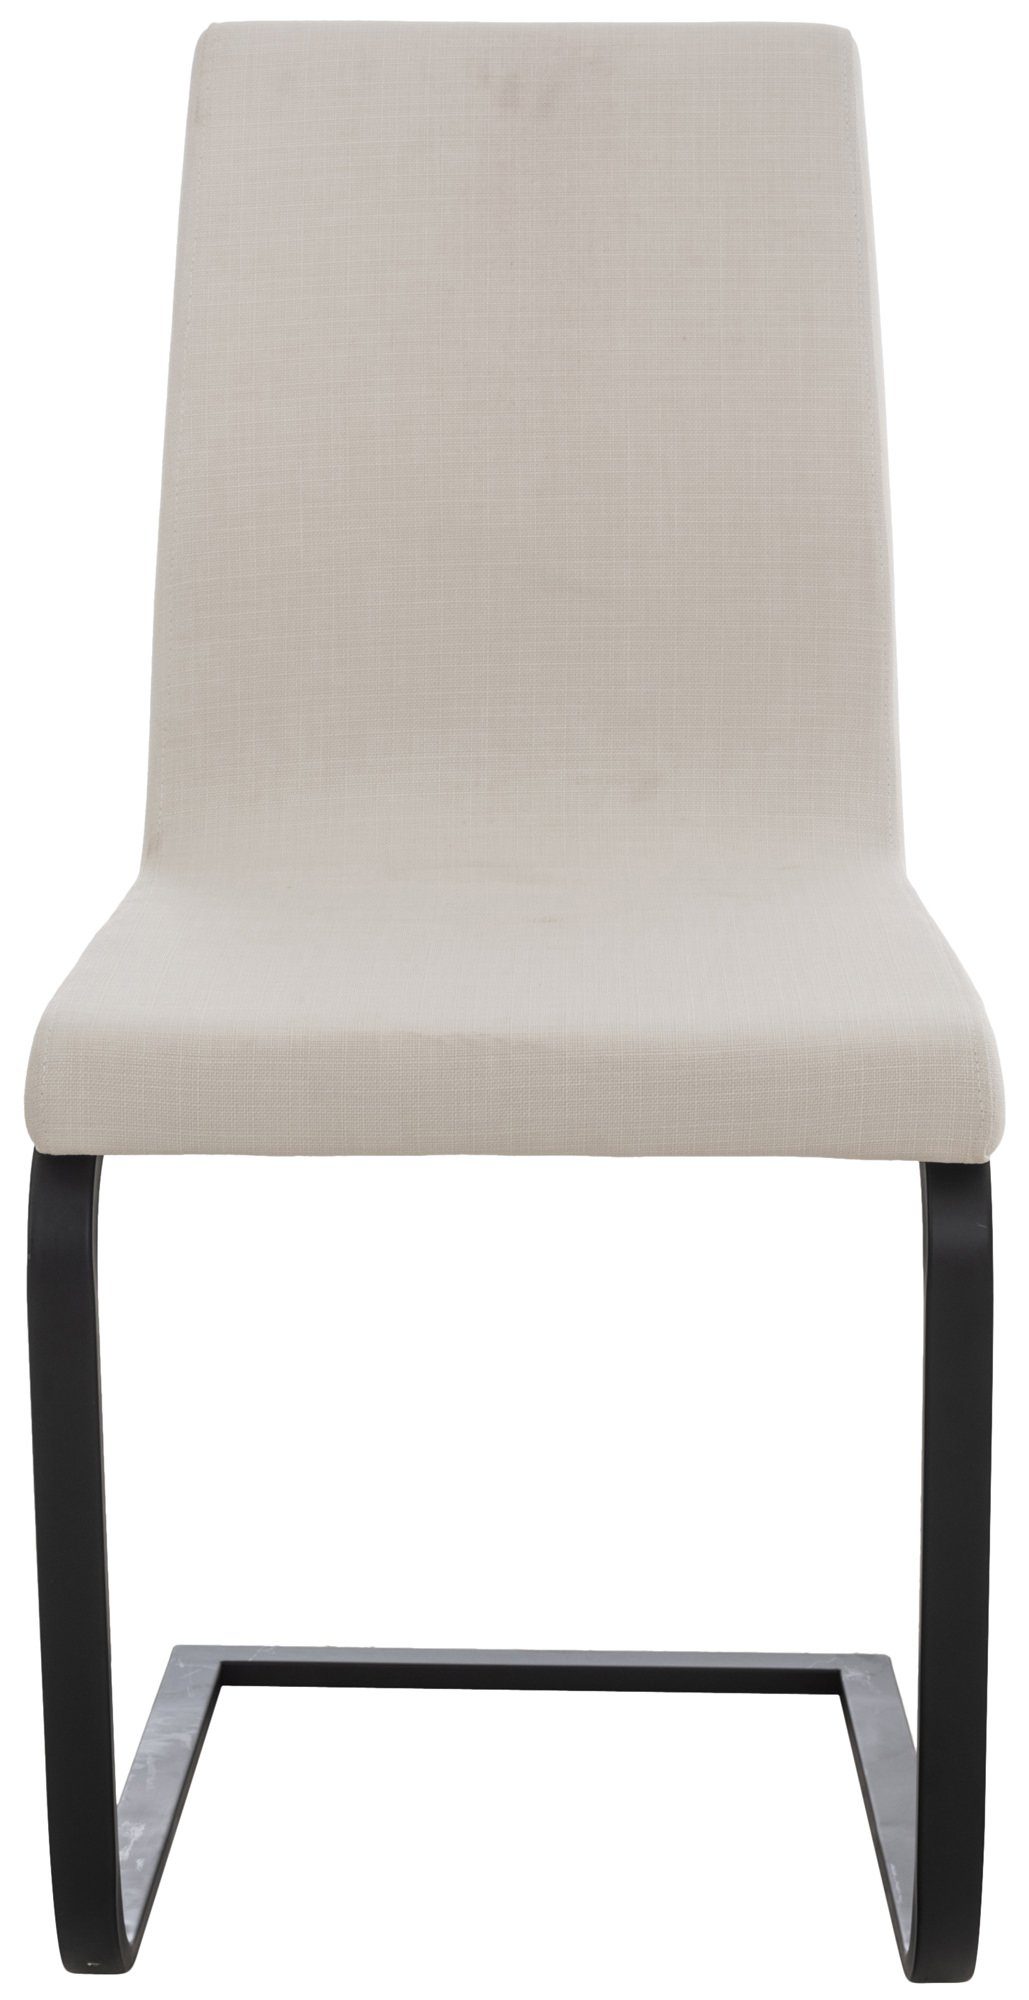 Esszimmerstuhl Sitzfläche: Bellle Freischwinger), (Küchenstuhl Konferenzstuhl Sitzfläche weiß gepolsterter TPFLiving - matt - hochwertig - Wohnzimmerstuhl mit Gestell: Stoff - schwarz Metall